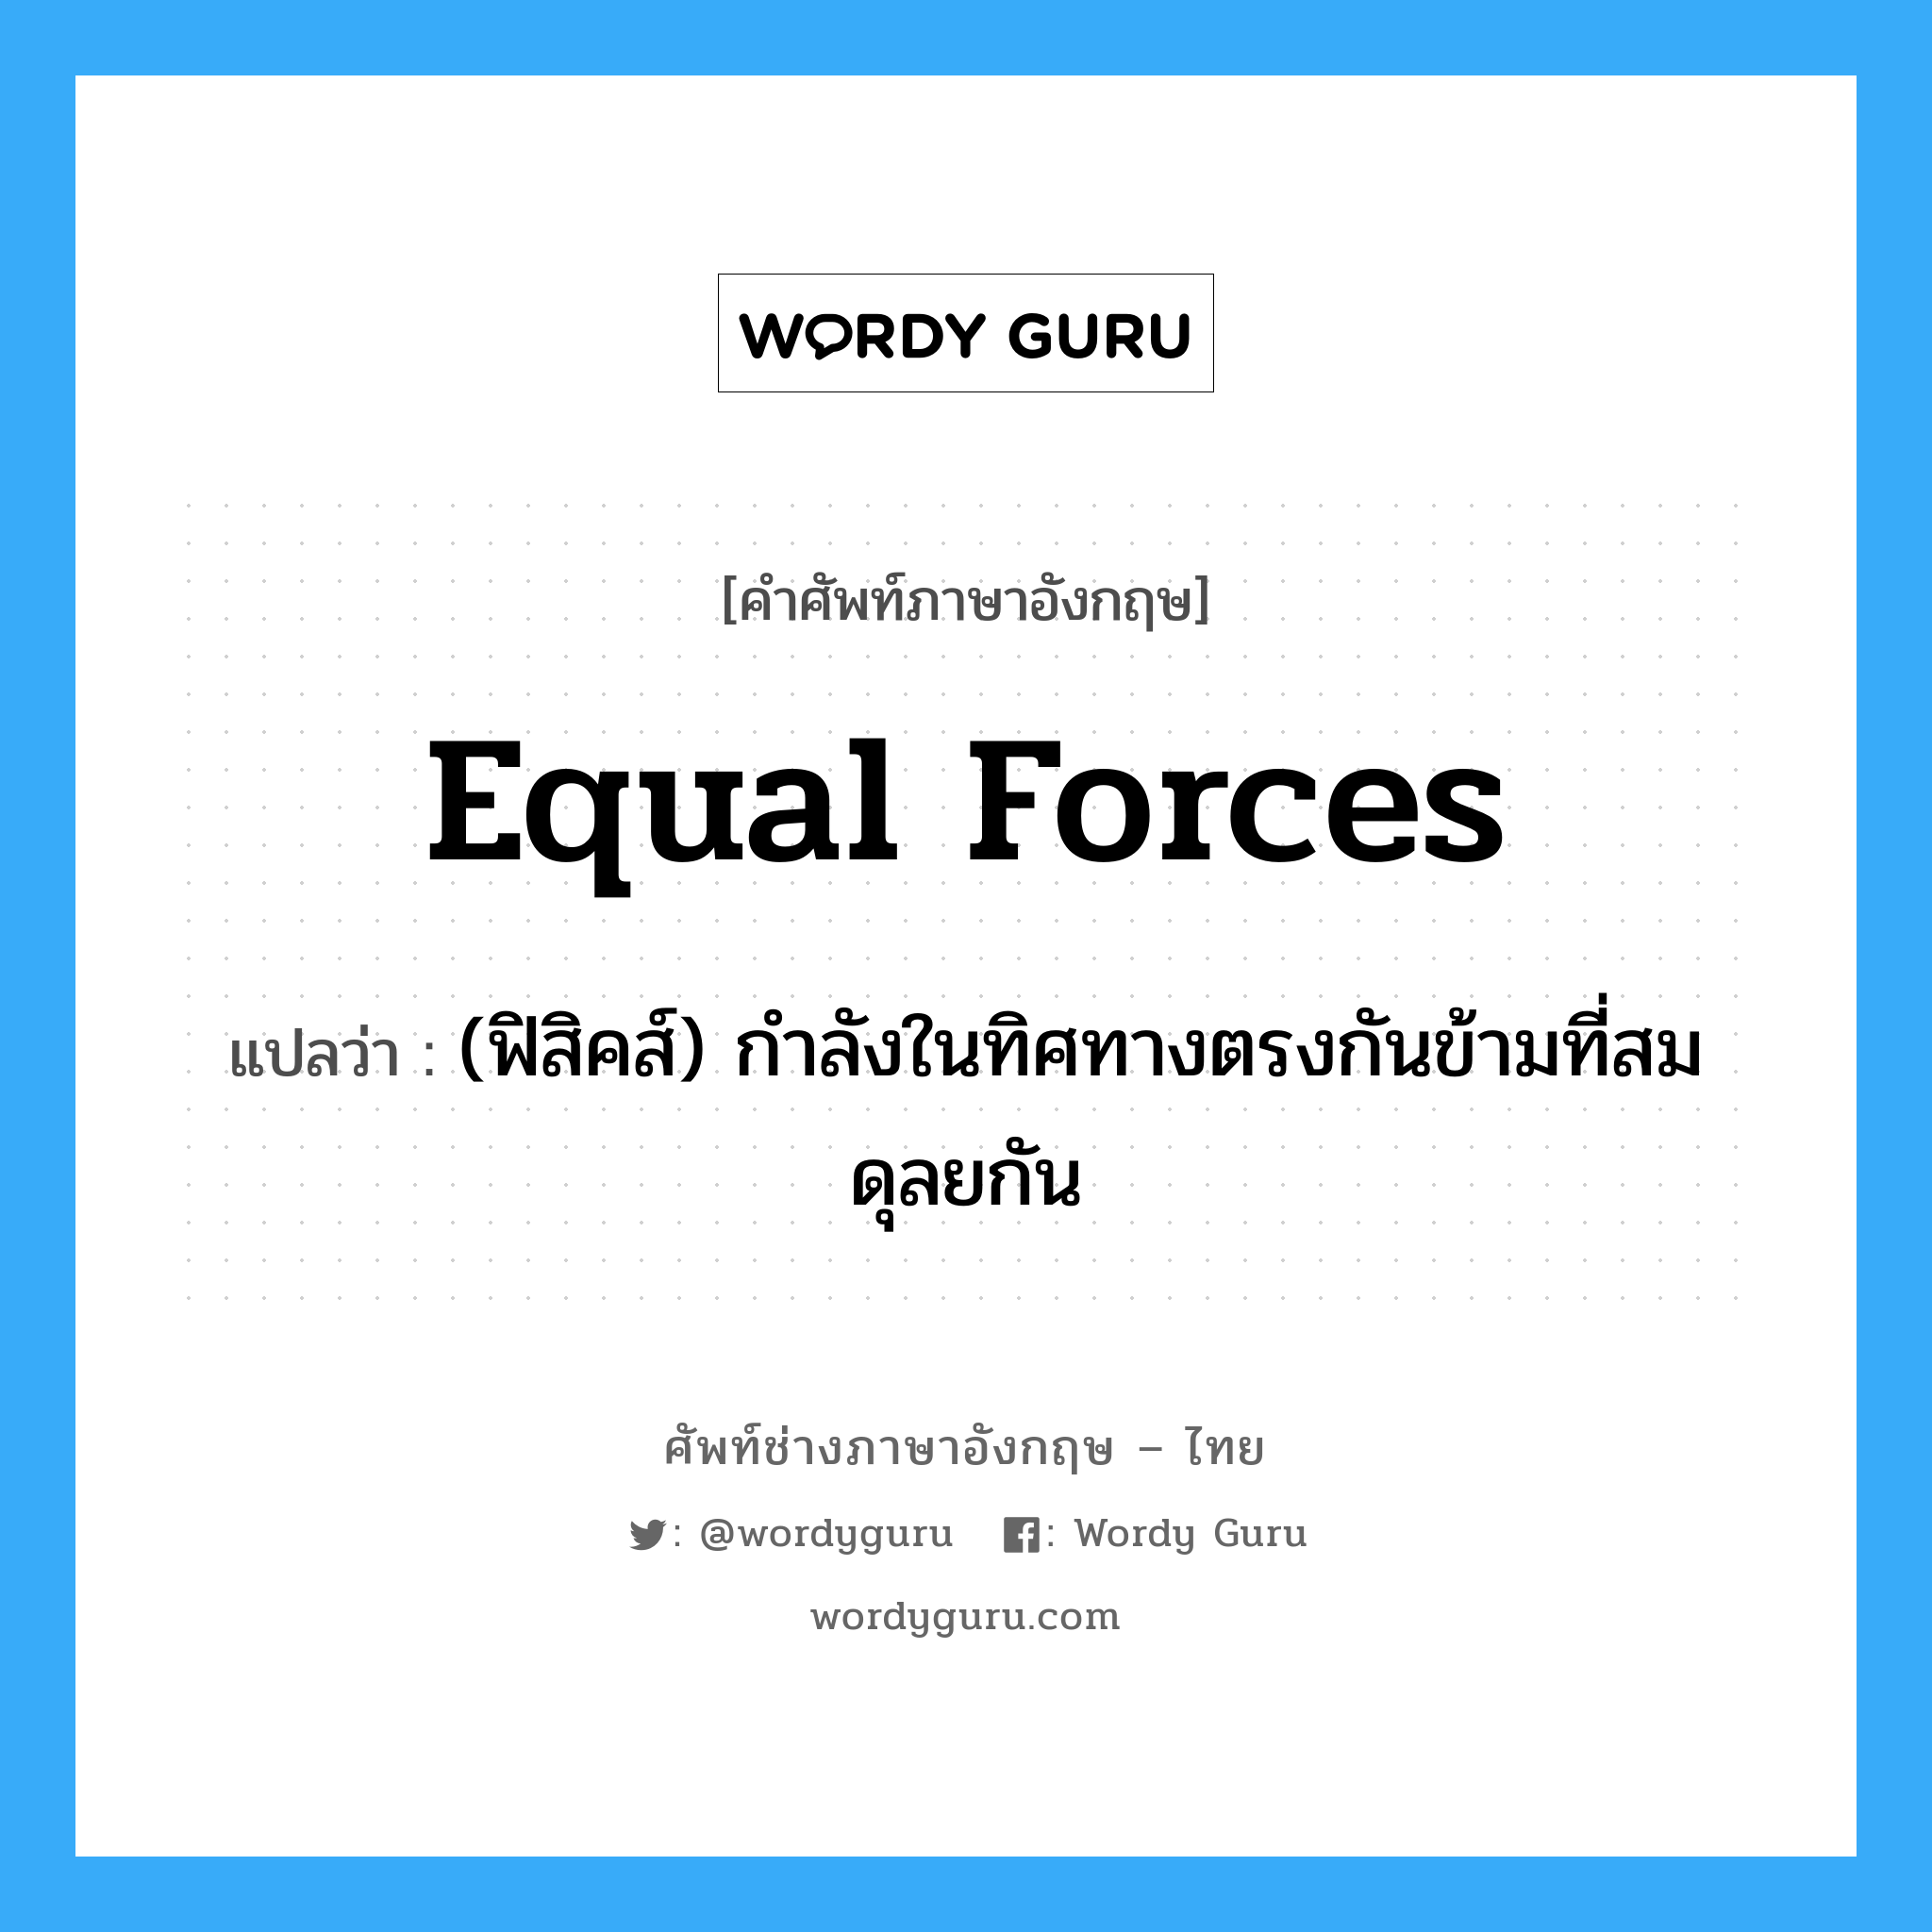 equal forces แปลว่า?, คำศัพท์ช่างภาษาอังกฤษ - ไทย equal forces คำศัพท์ภาษาอังกฤษ equal forces แปลว่า (ฟิสิคส์) กำลังในทิศทางตรงกันข้ามที่สมดุลยกัน